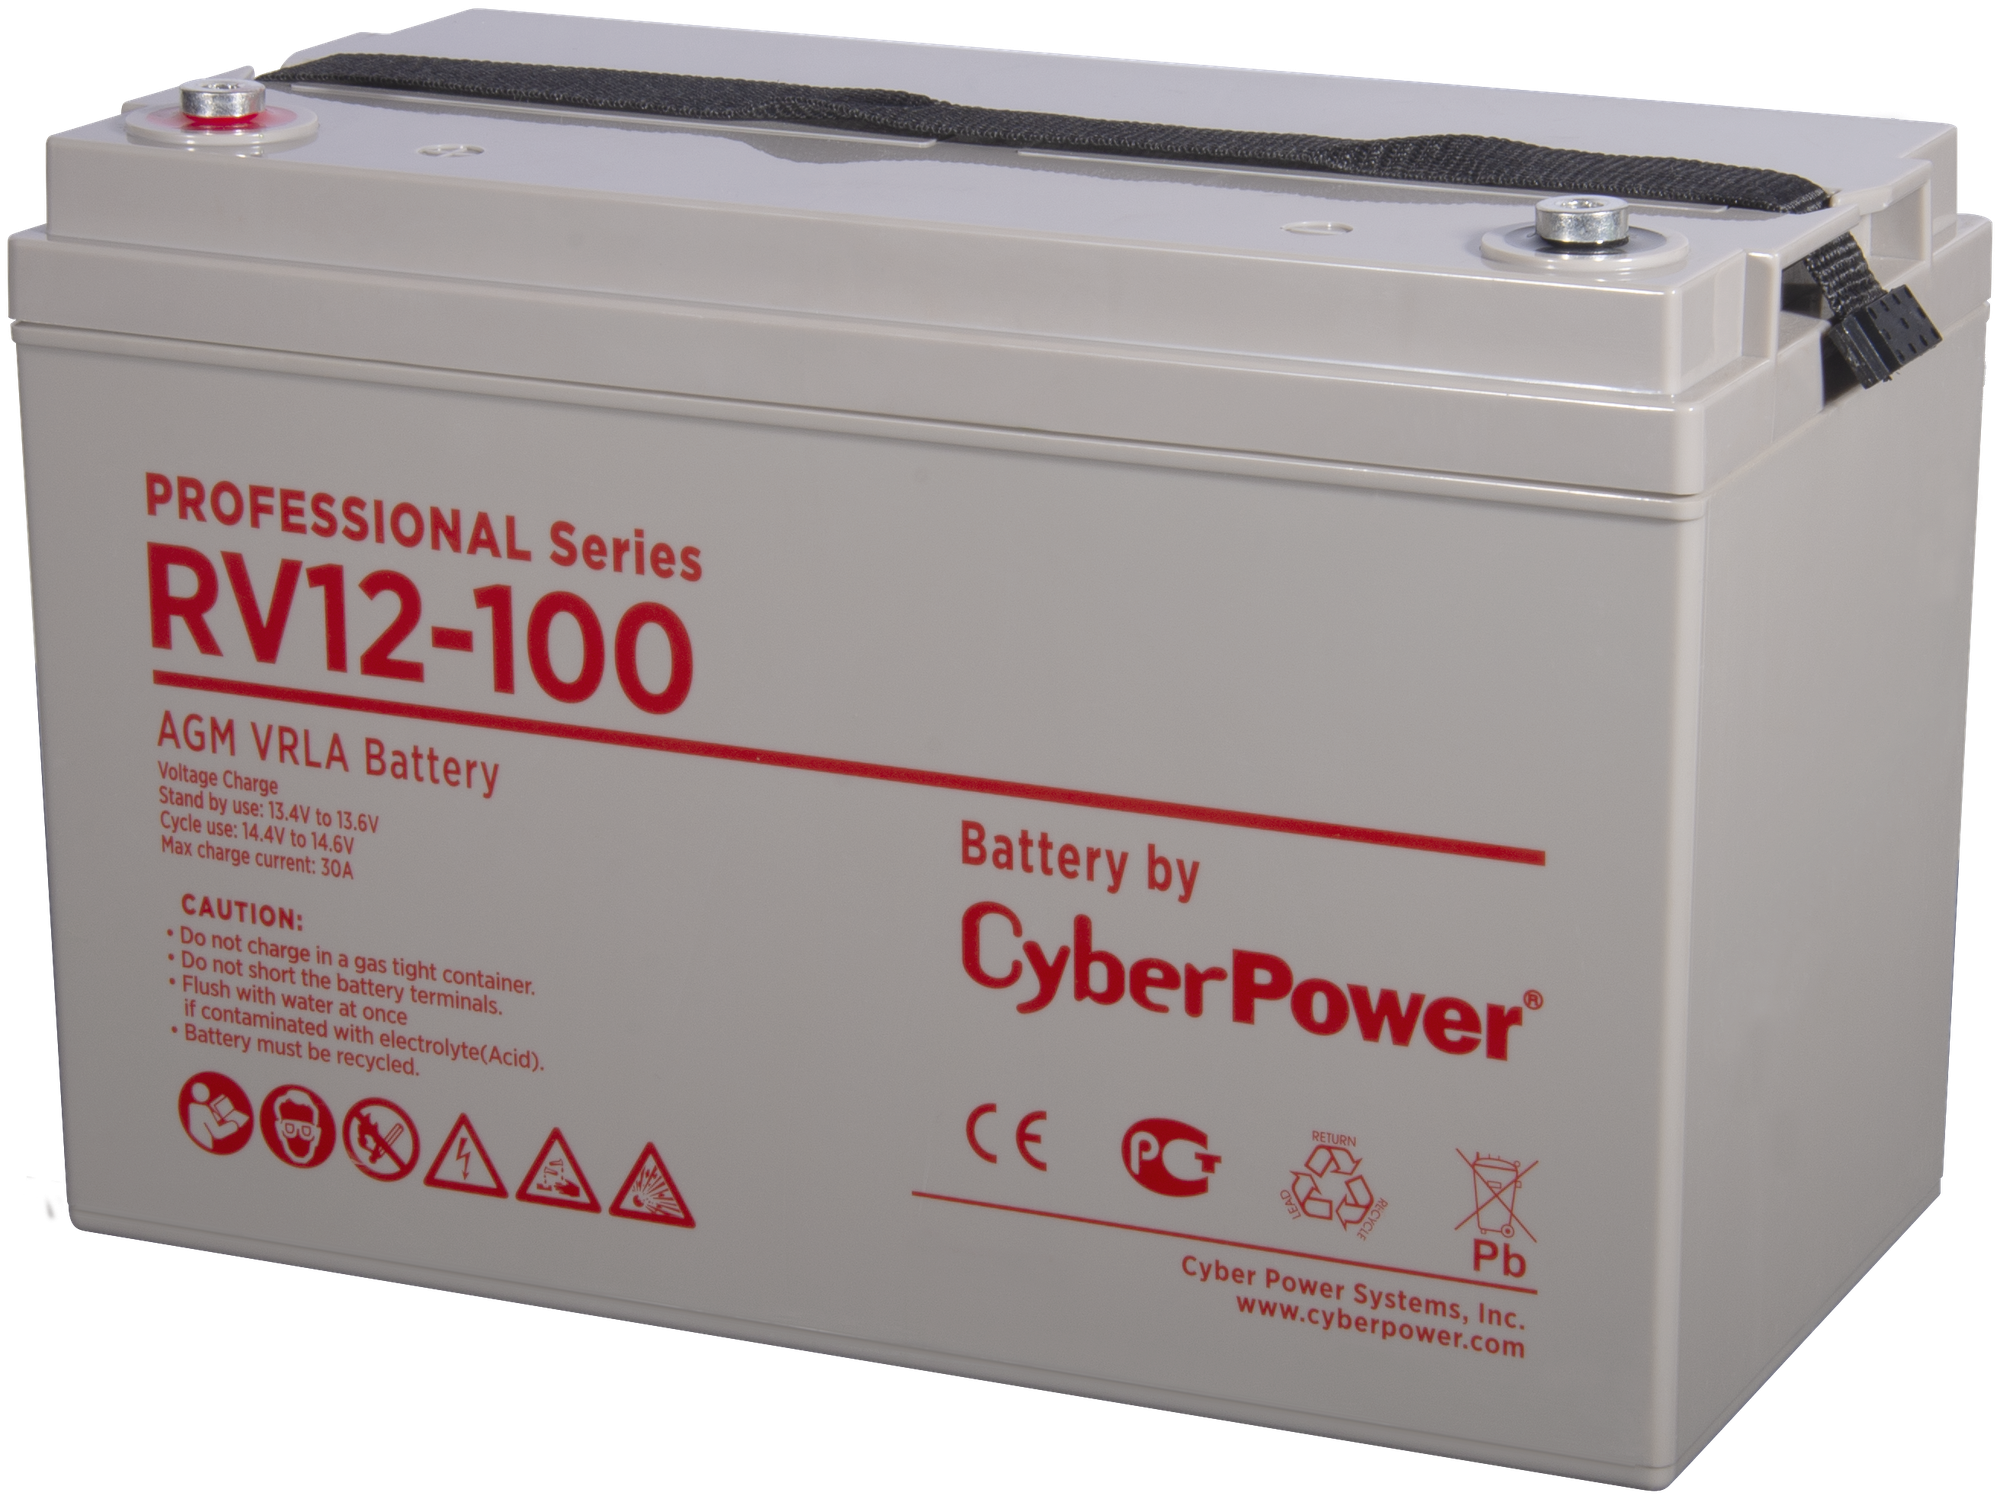 Батарейный модуль Cyberpower Battery CyberPower Professional series RV 12-100 / 12V 100 Ah